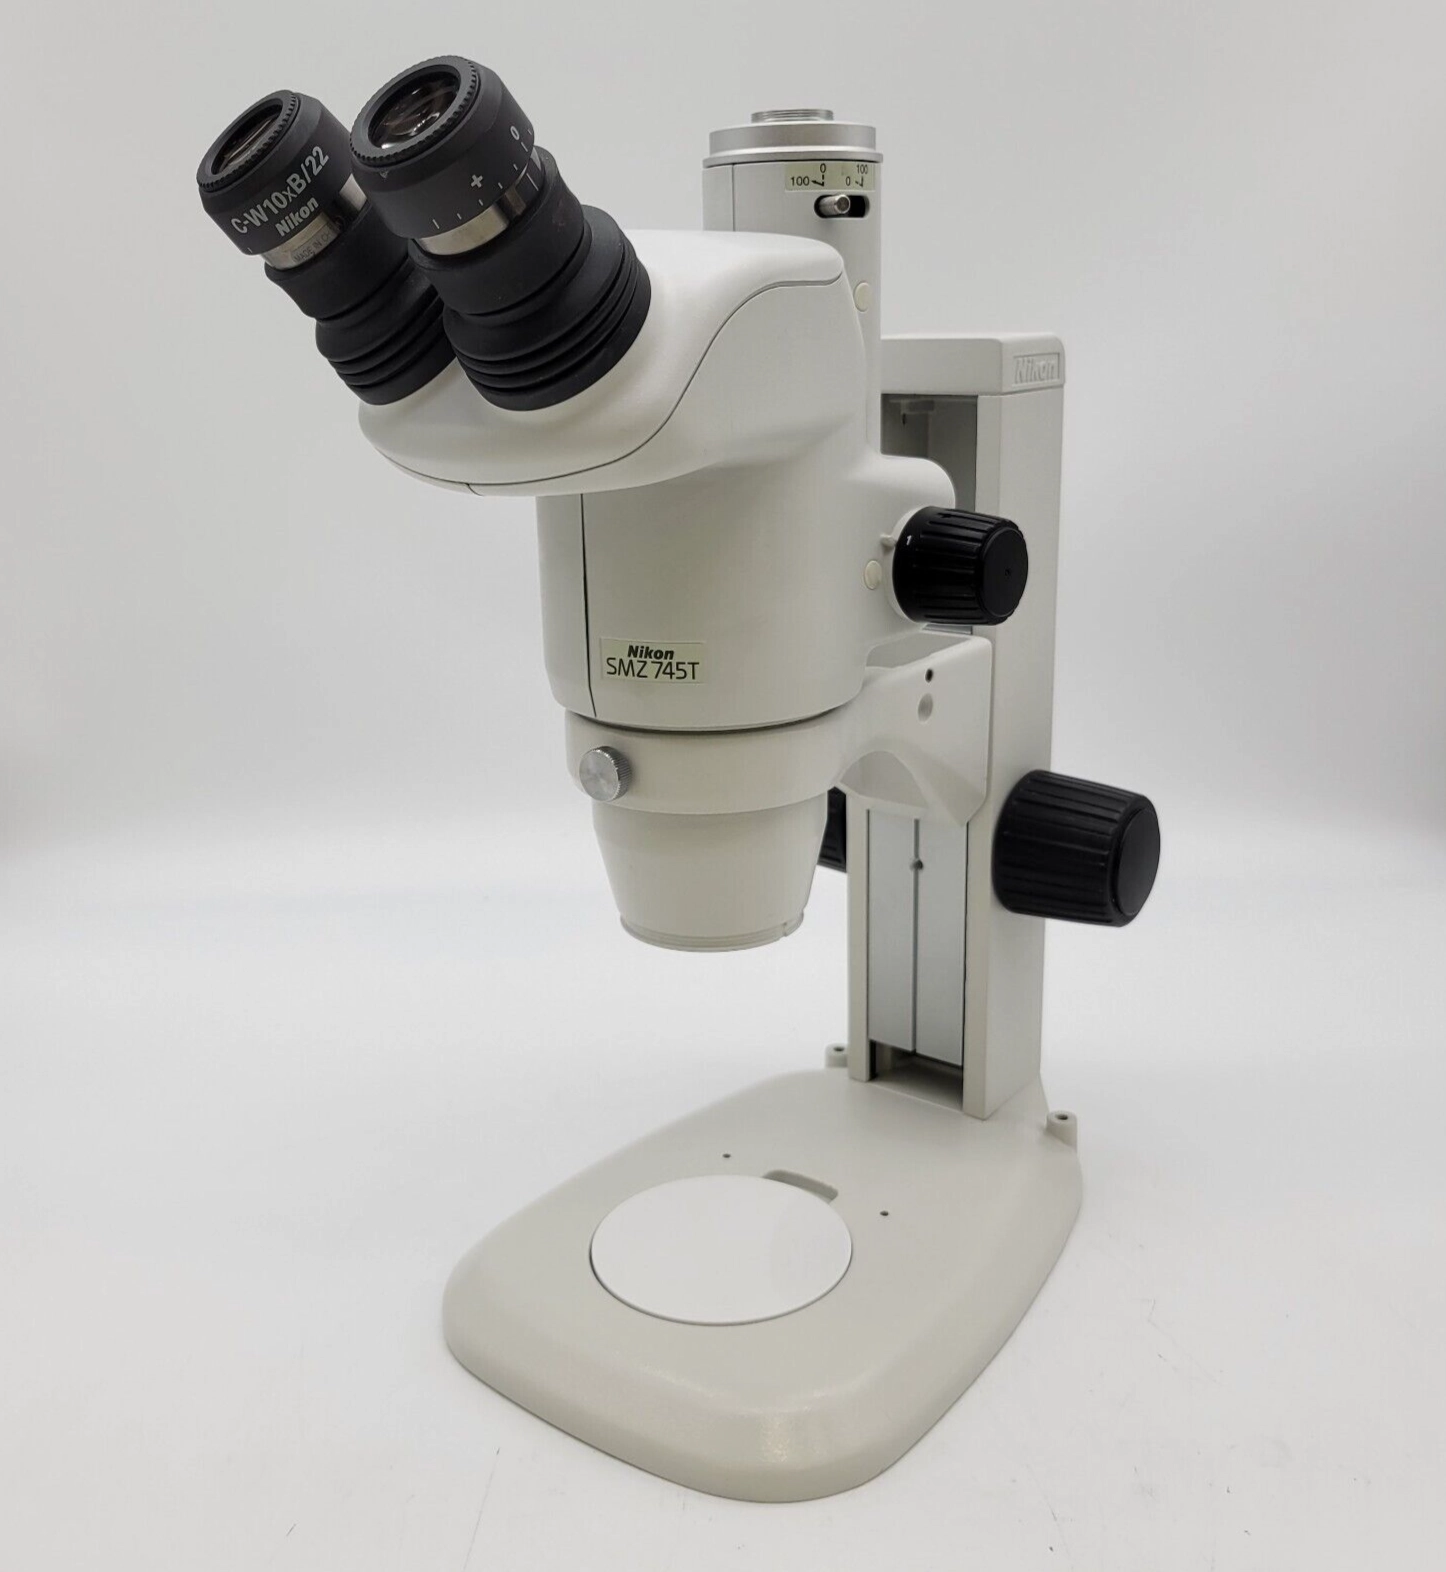 Nikon Stereo Microscope SMZ745T with Stand SMZ 745T Trinocular